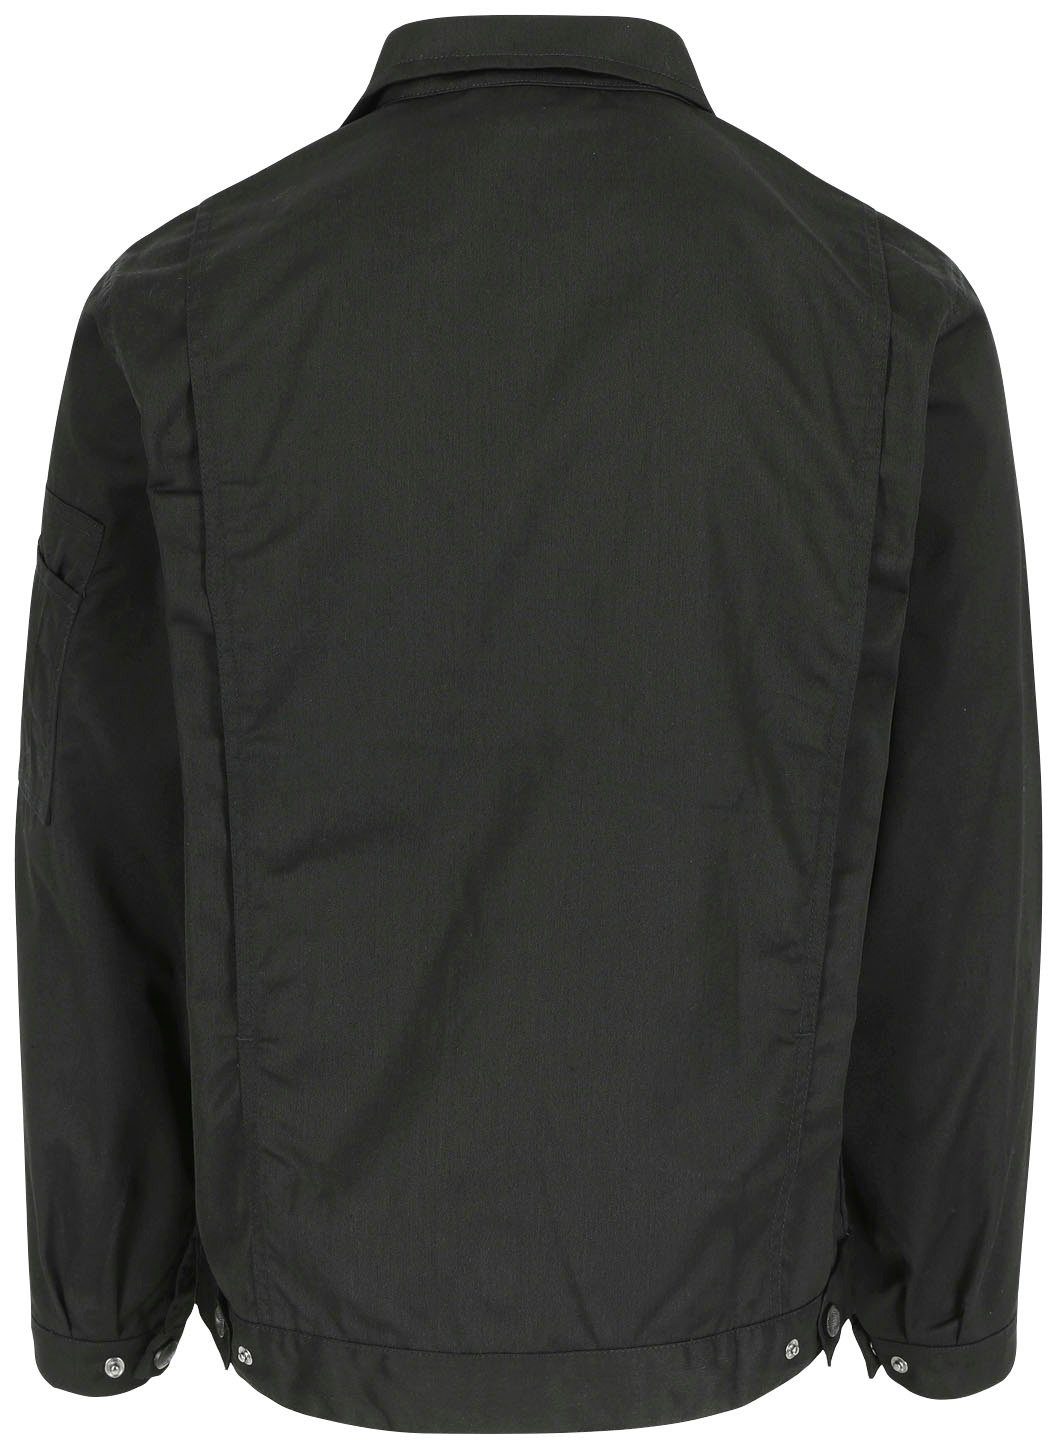 Taschen mit Aton einstellbare Jacke Jacke Bündchen und Herock Arbeitsjacke vielen Wasserabweisende